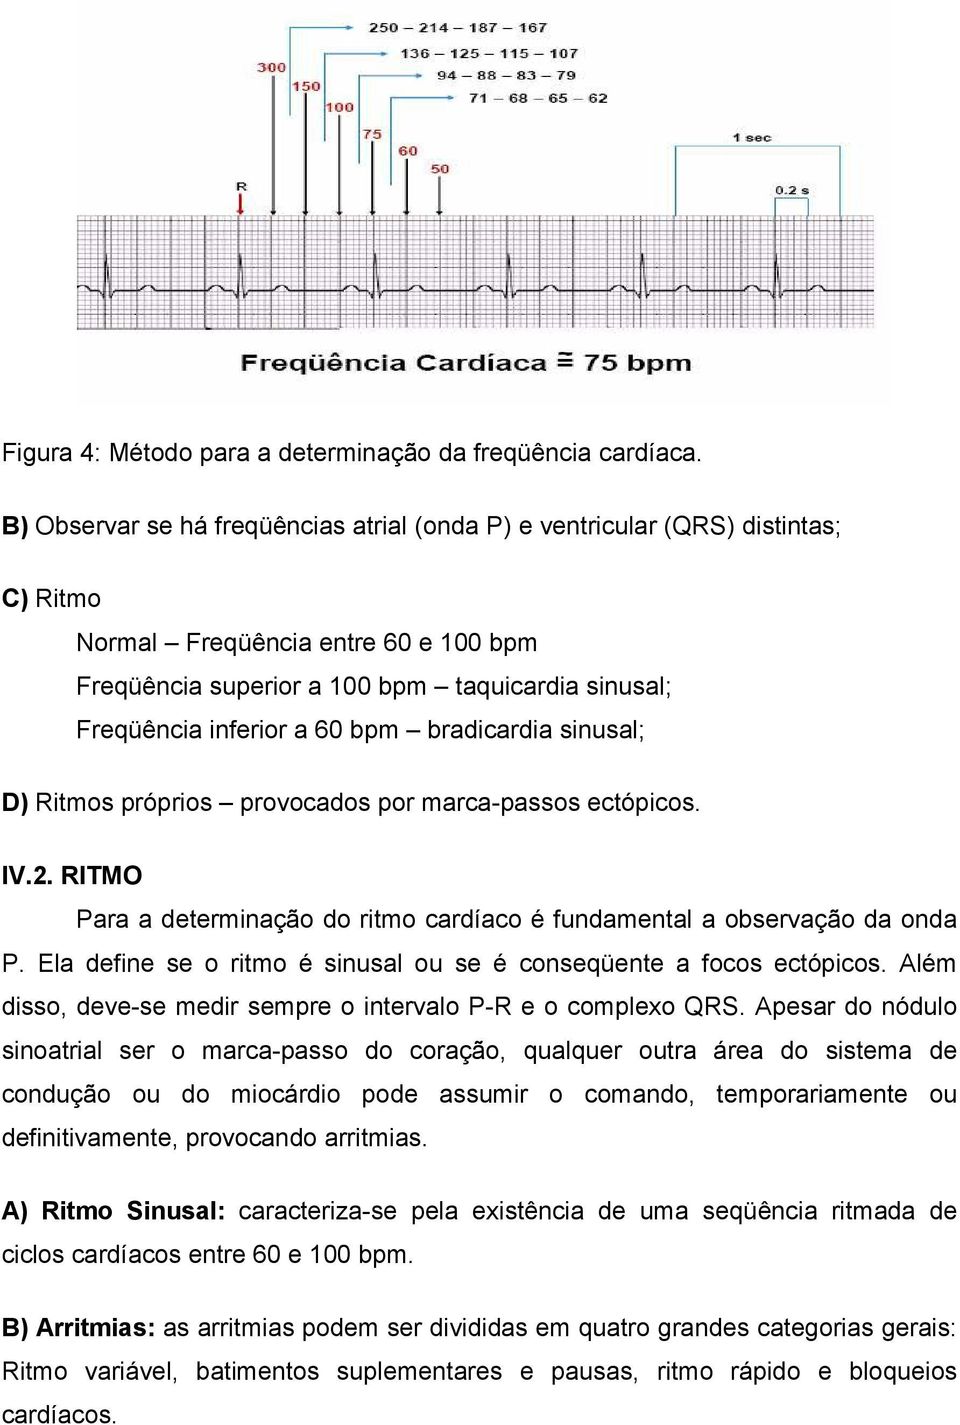 bpm bradicardia sinusal; D) Ritmos próprios provocados por marca-passos ectópicos. IV.2. RITMO Para a determinação do ritmo cardíaco é fundamental a observação da onda P.